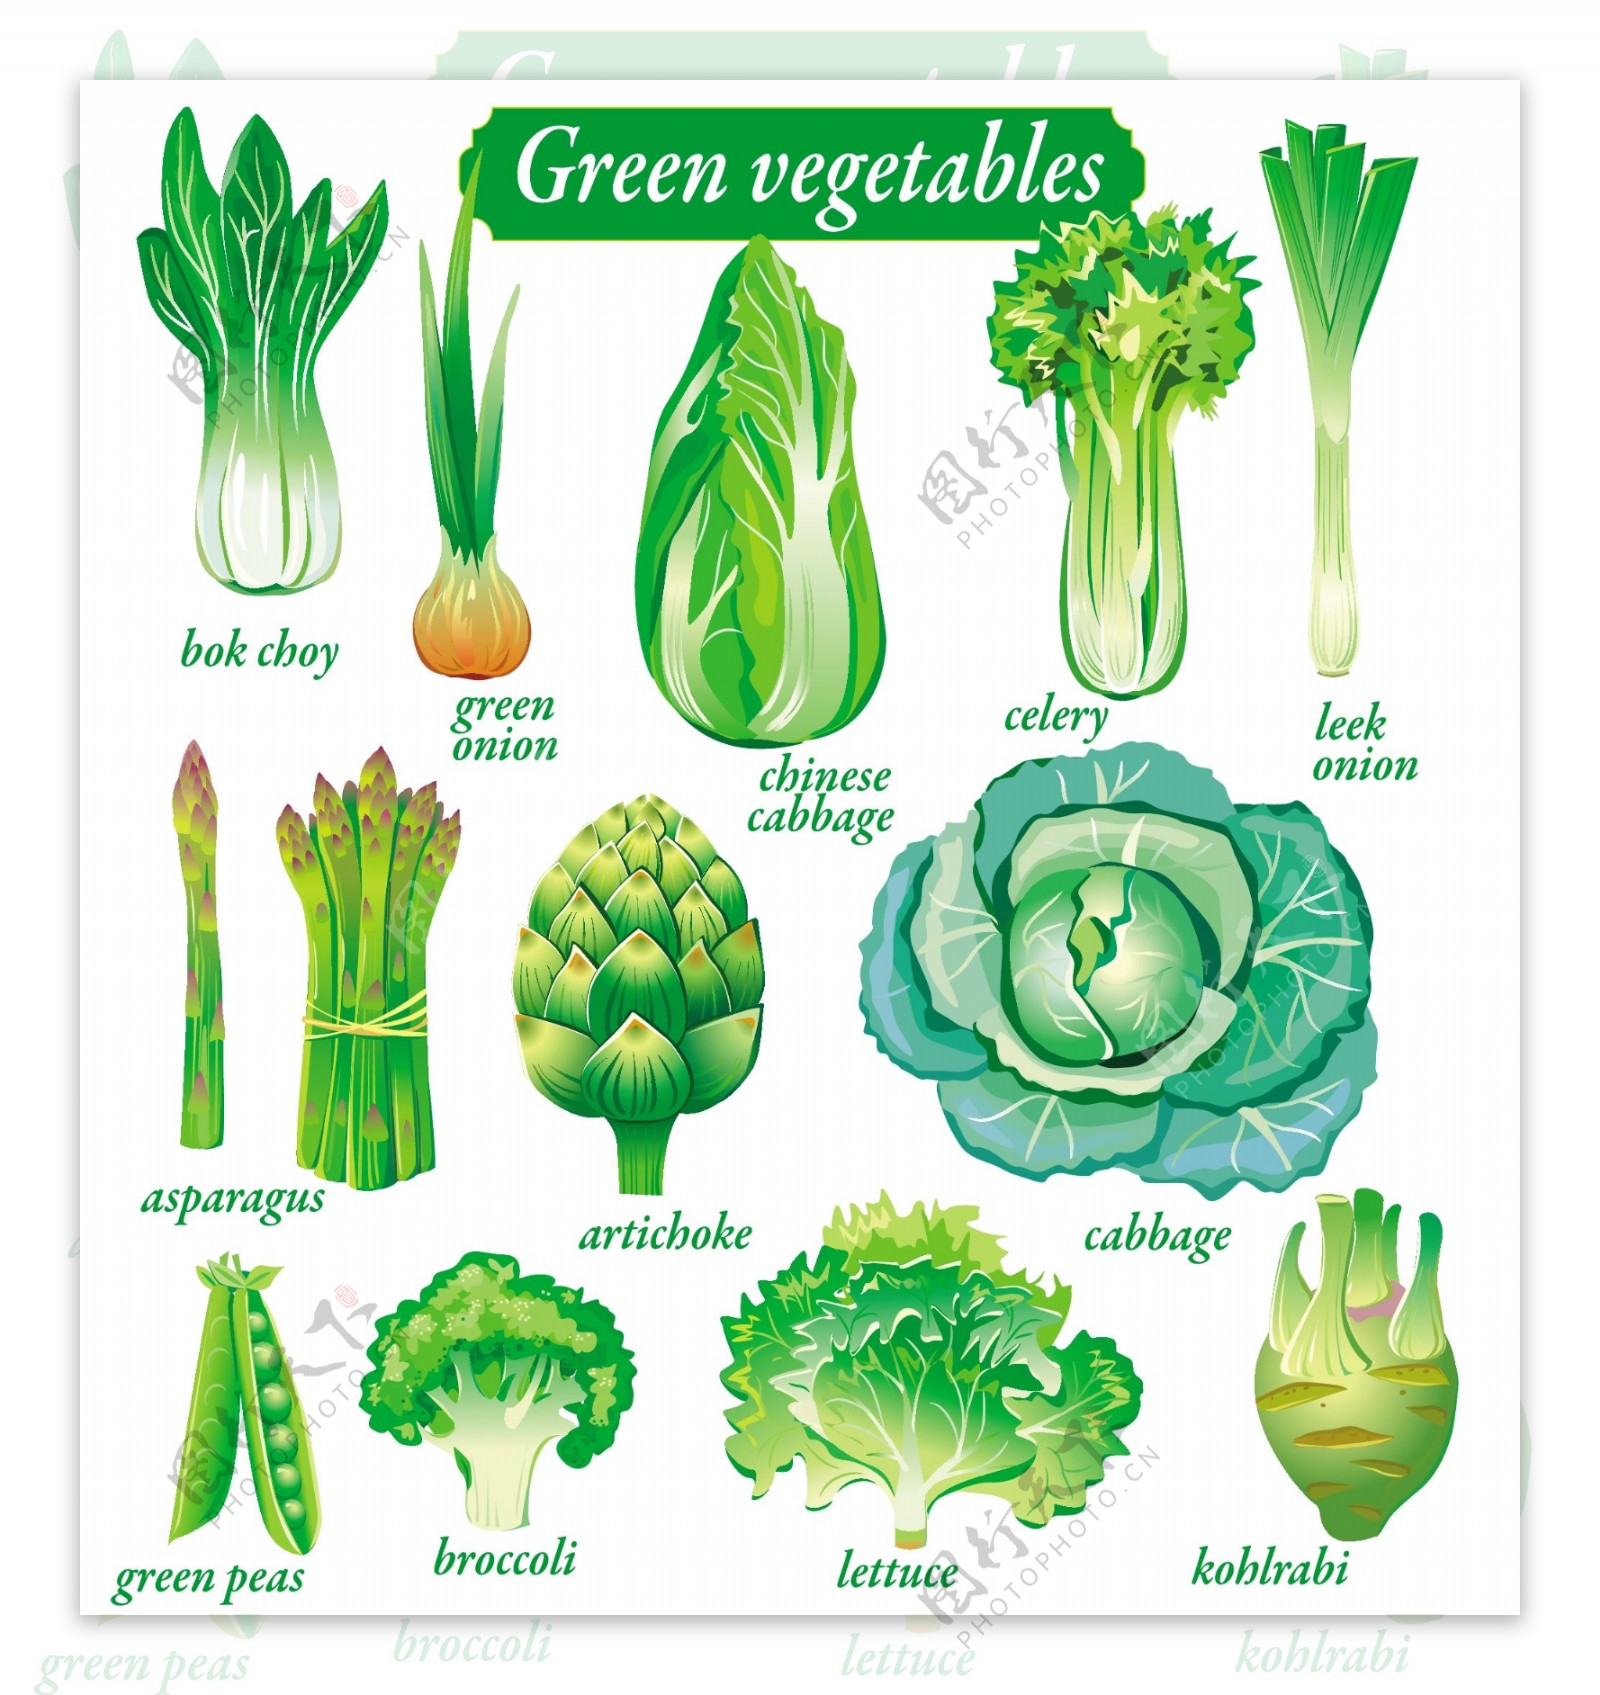 各种绿色蔬菜瓜果